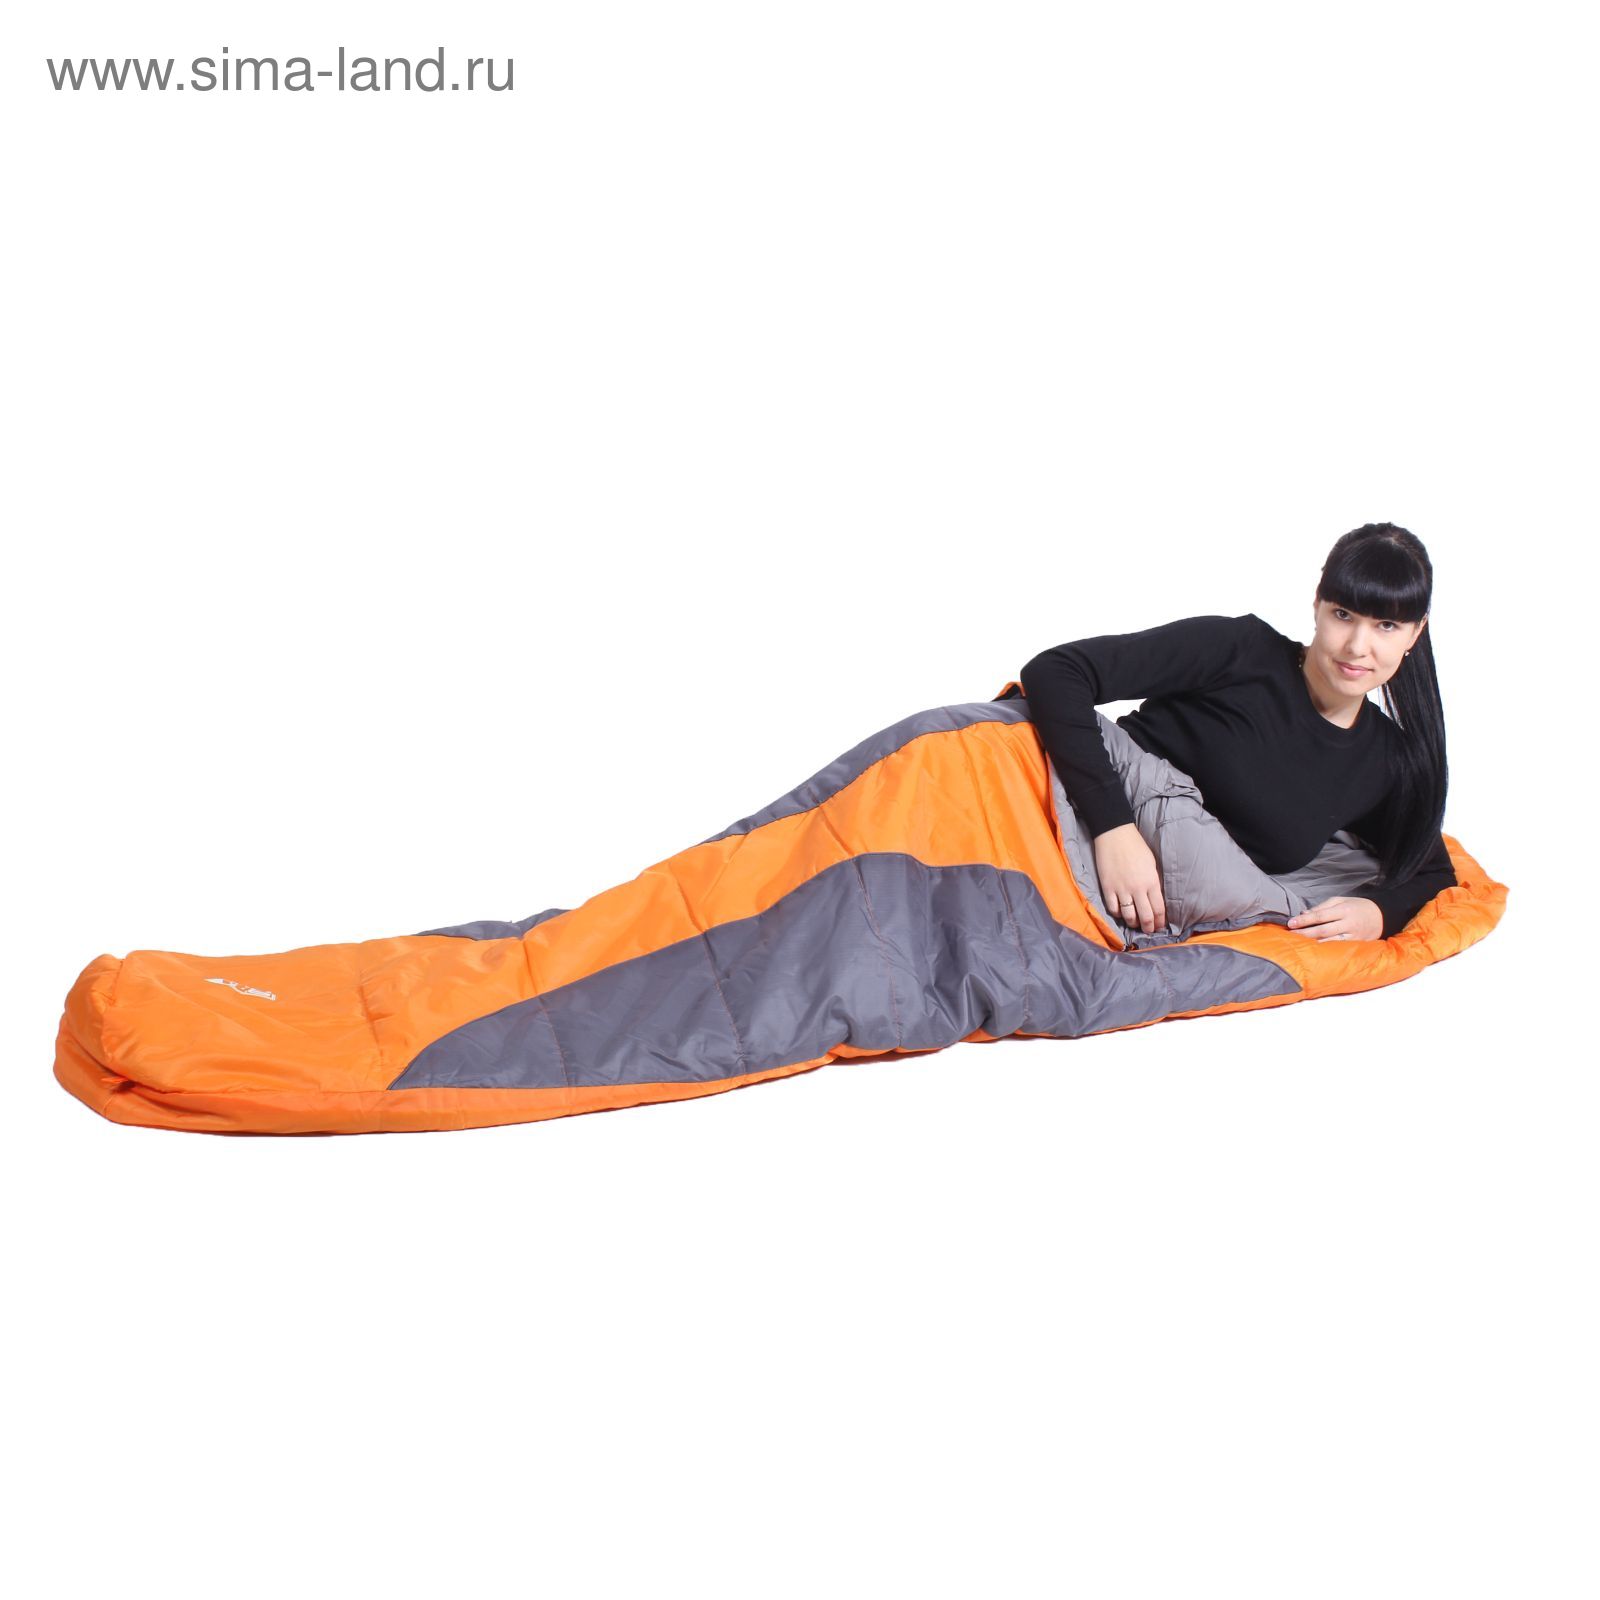 Спальный мешок Wrap 300, 230х80х55 см, от -3°C до 3°C, МИКС